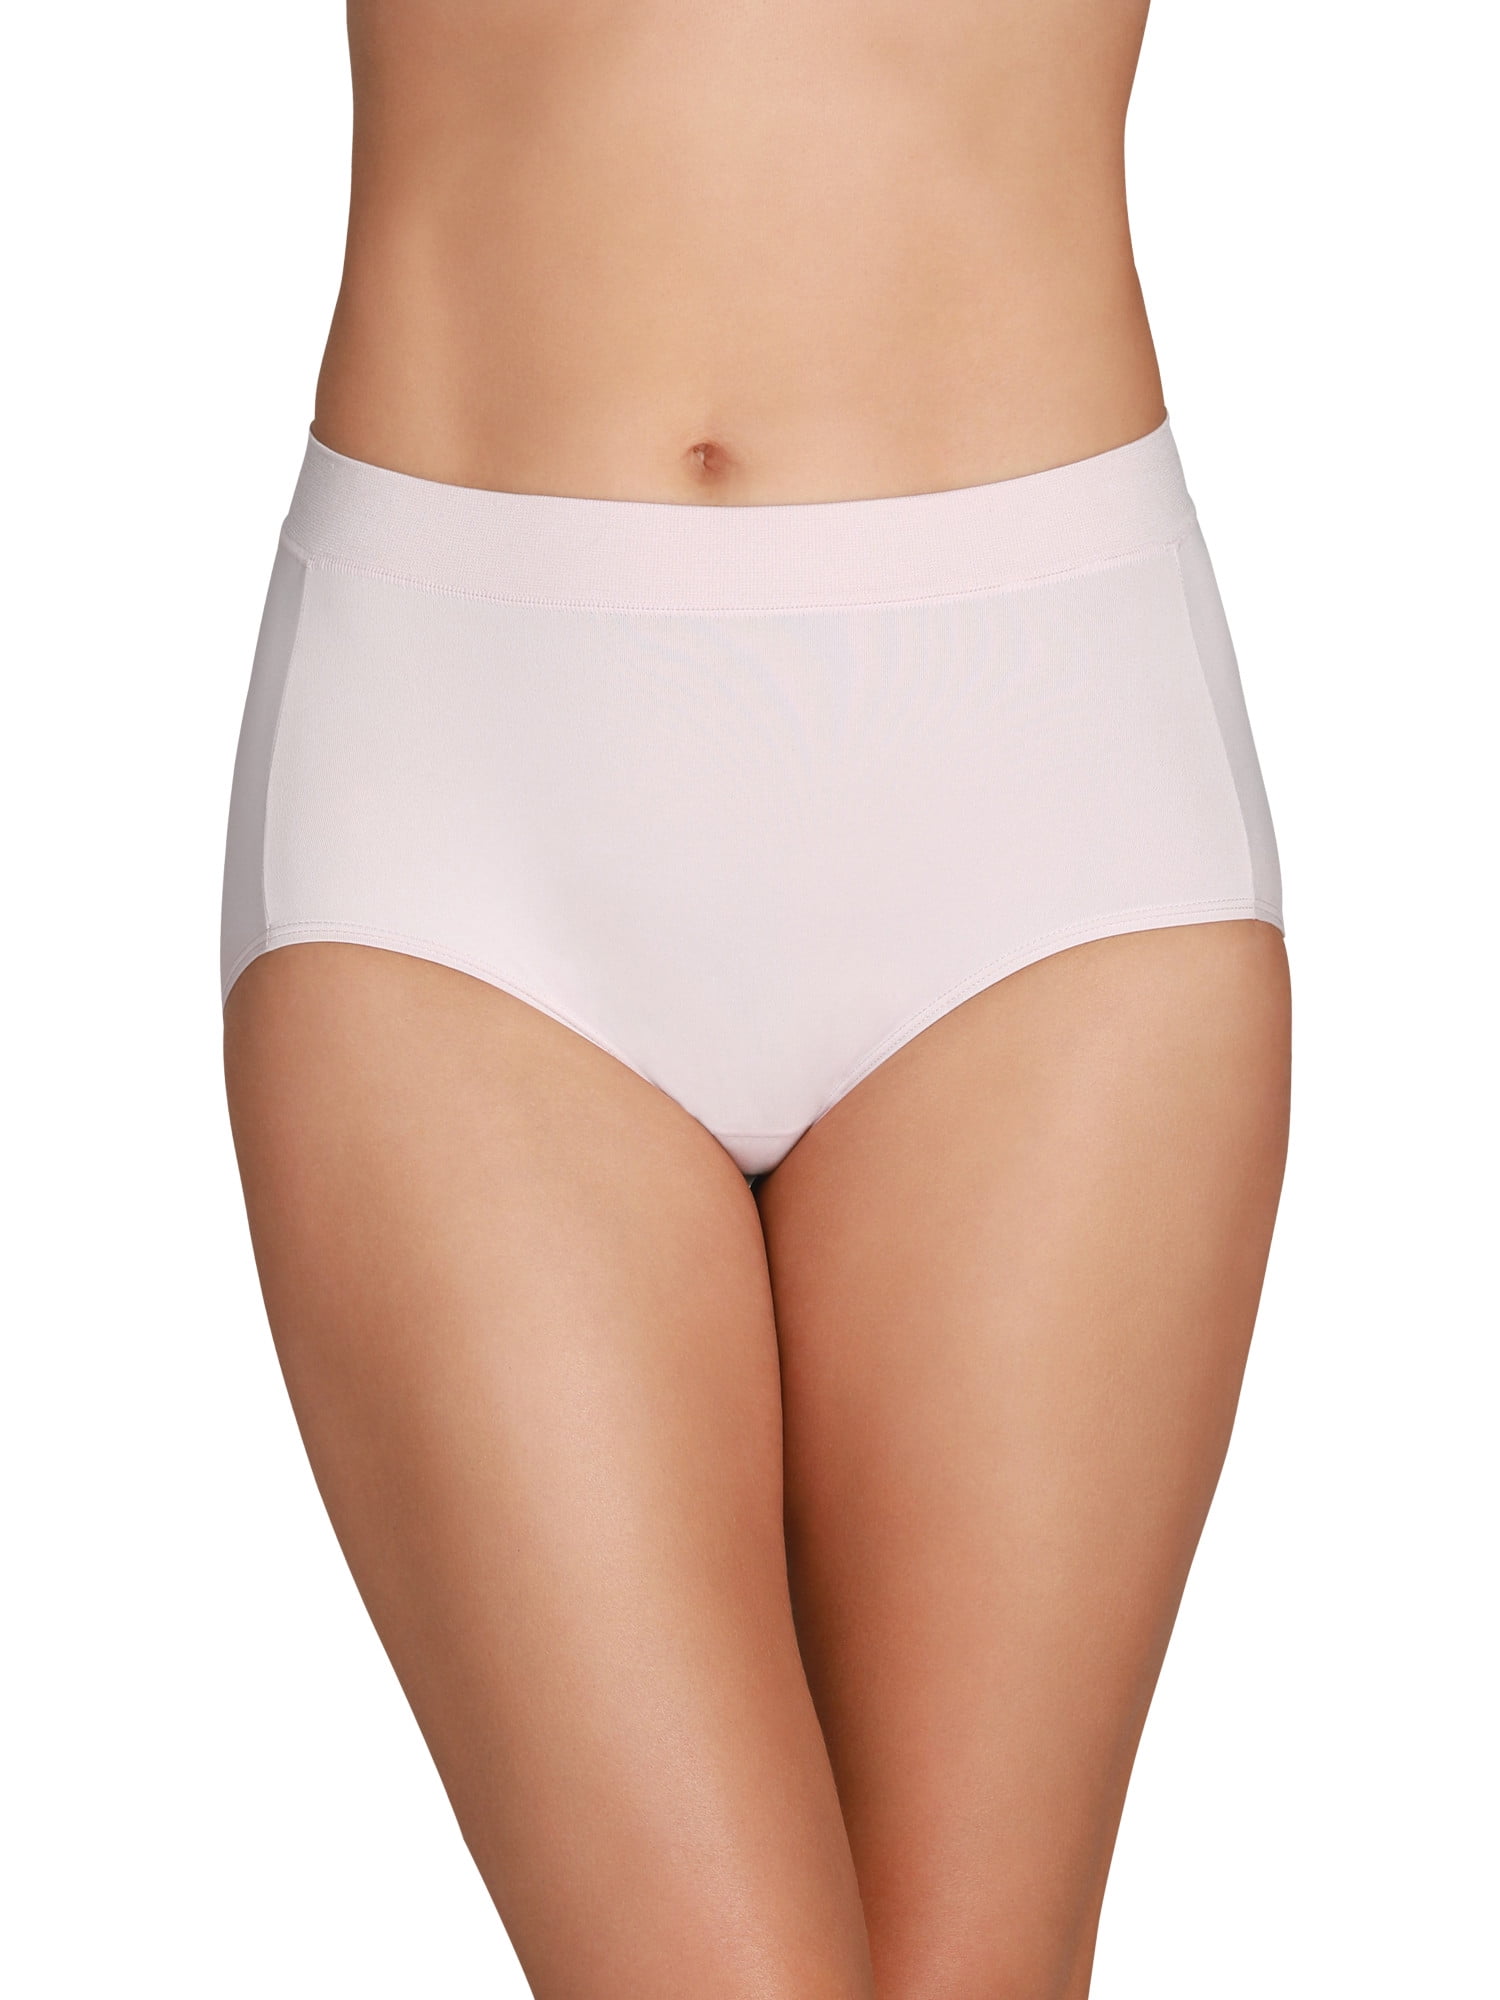 Women's Briefs - Panties & Underwear for Women - Bare Necessities